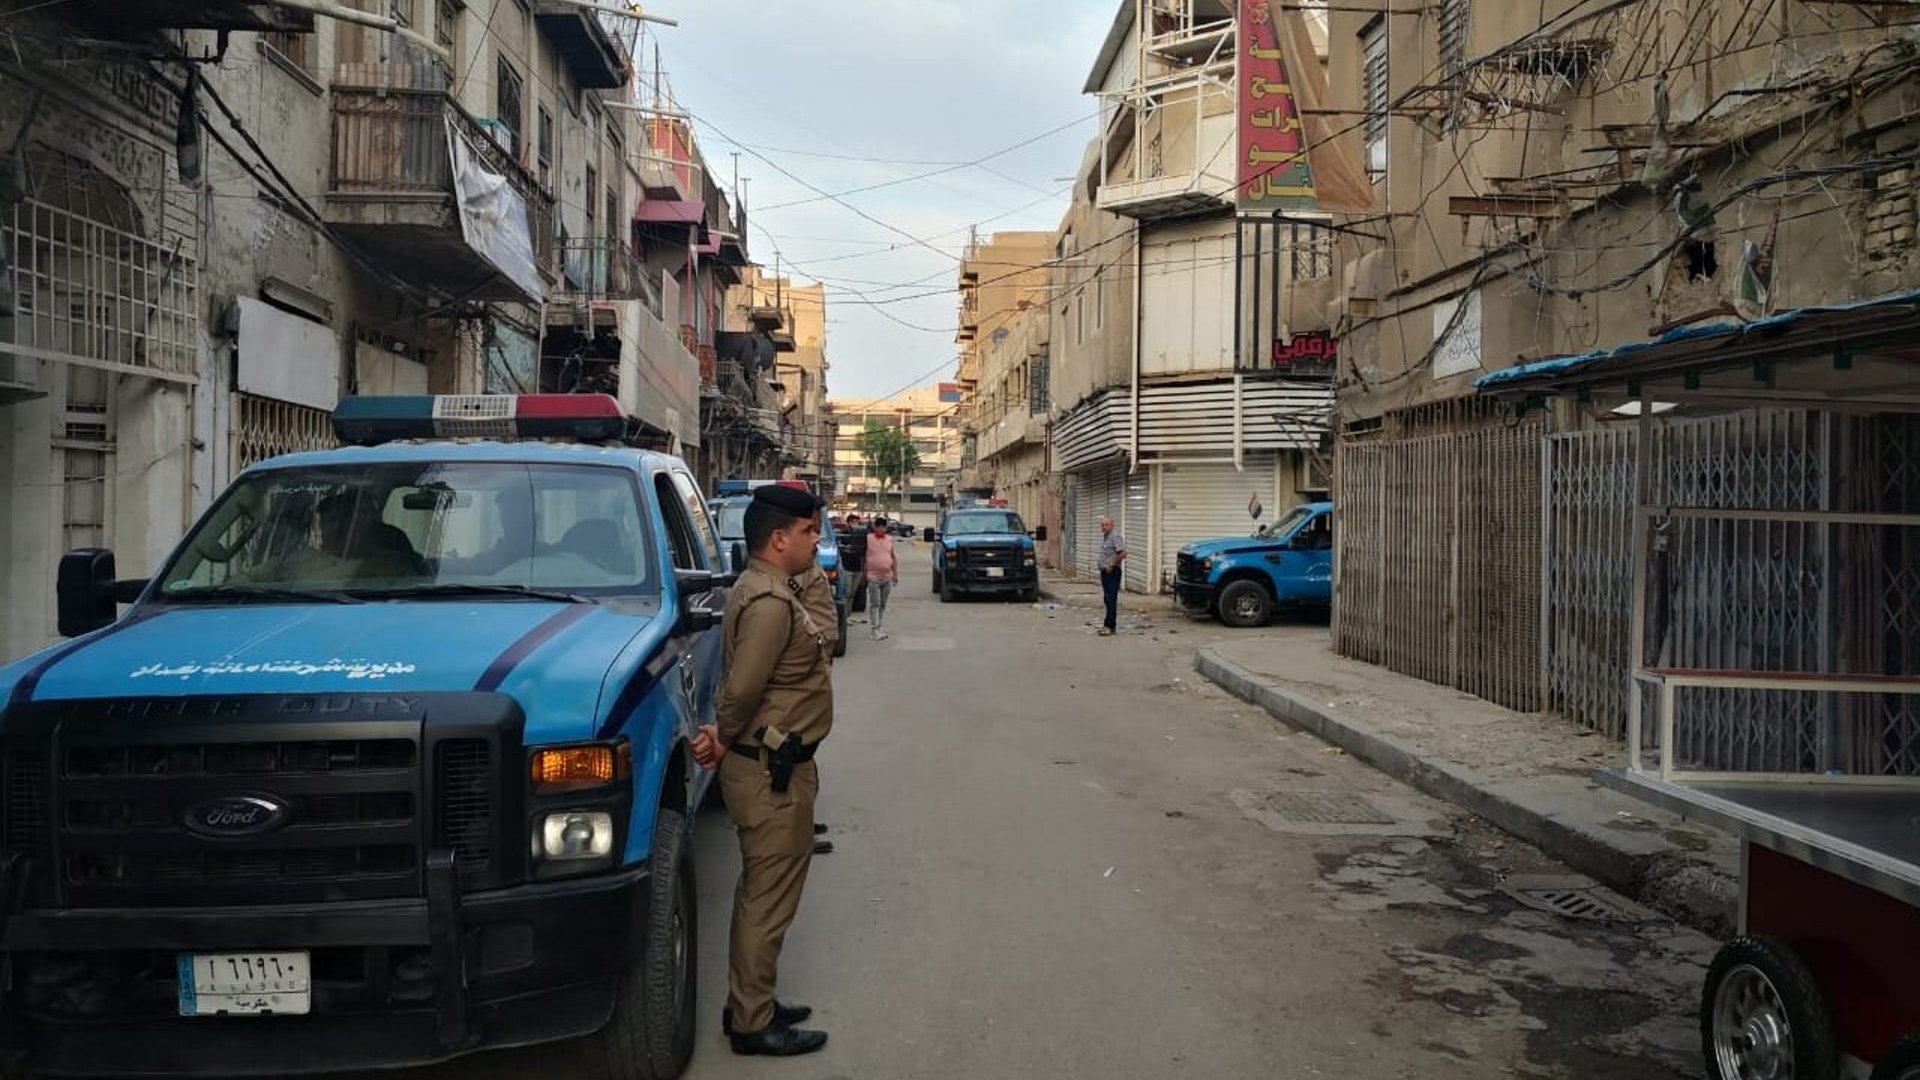 صور من العملية الأمنية التي نفذتها الداخلية في البتاوين ببغداد فجر اليوم